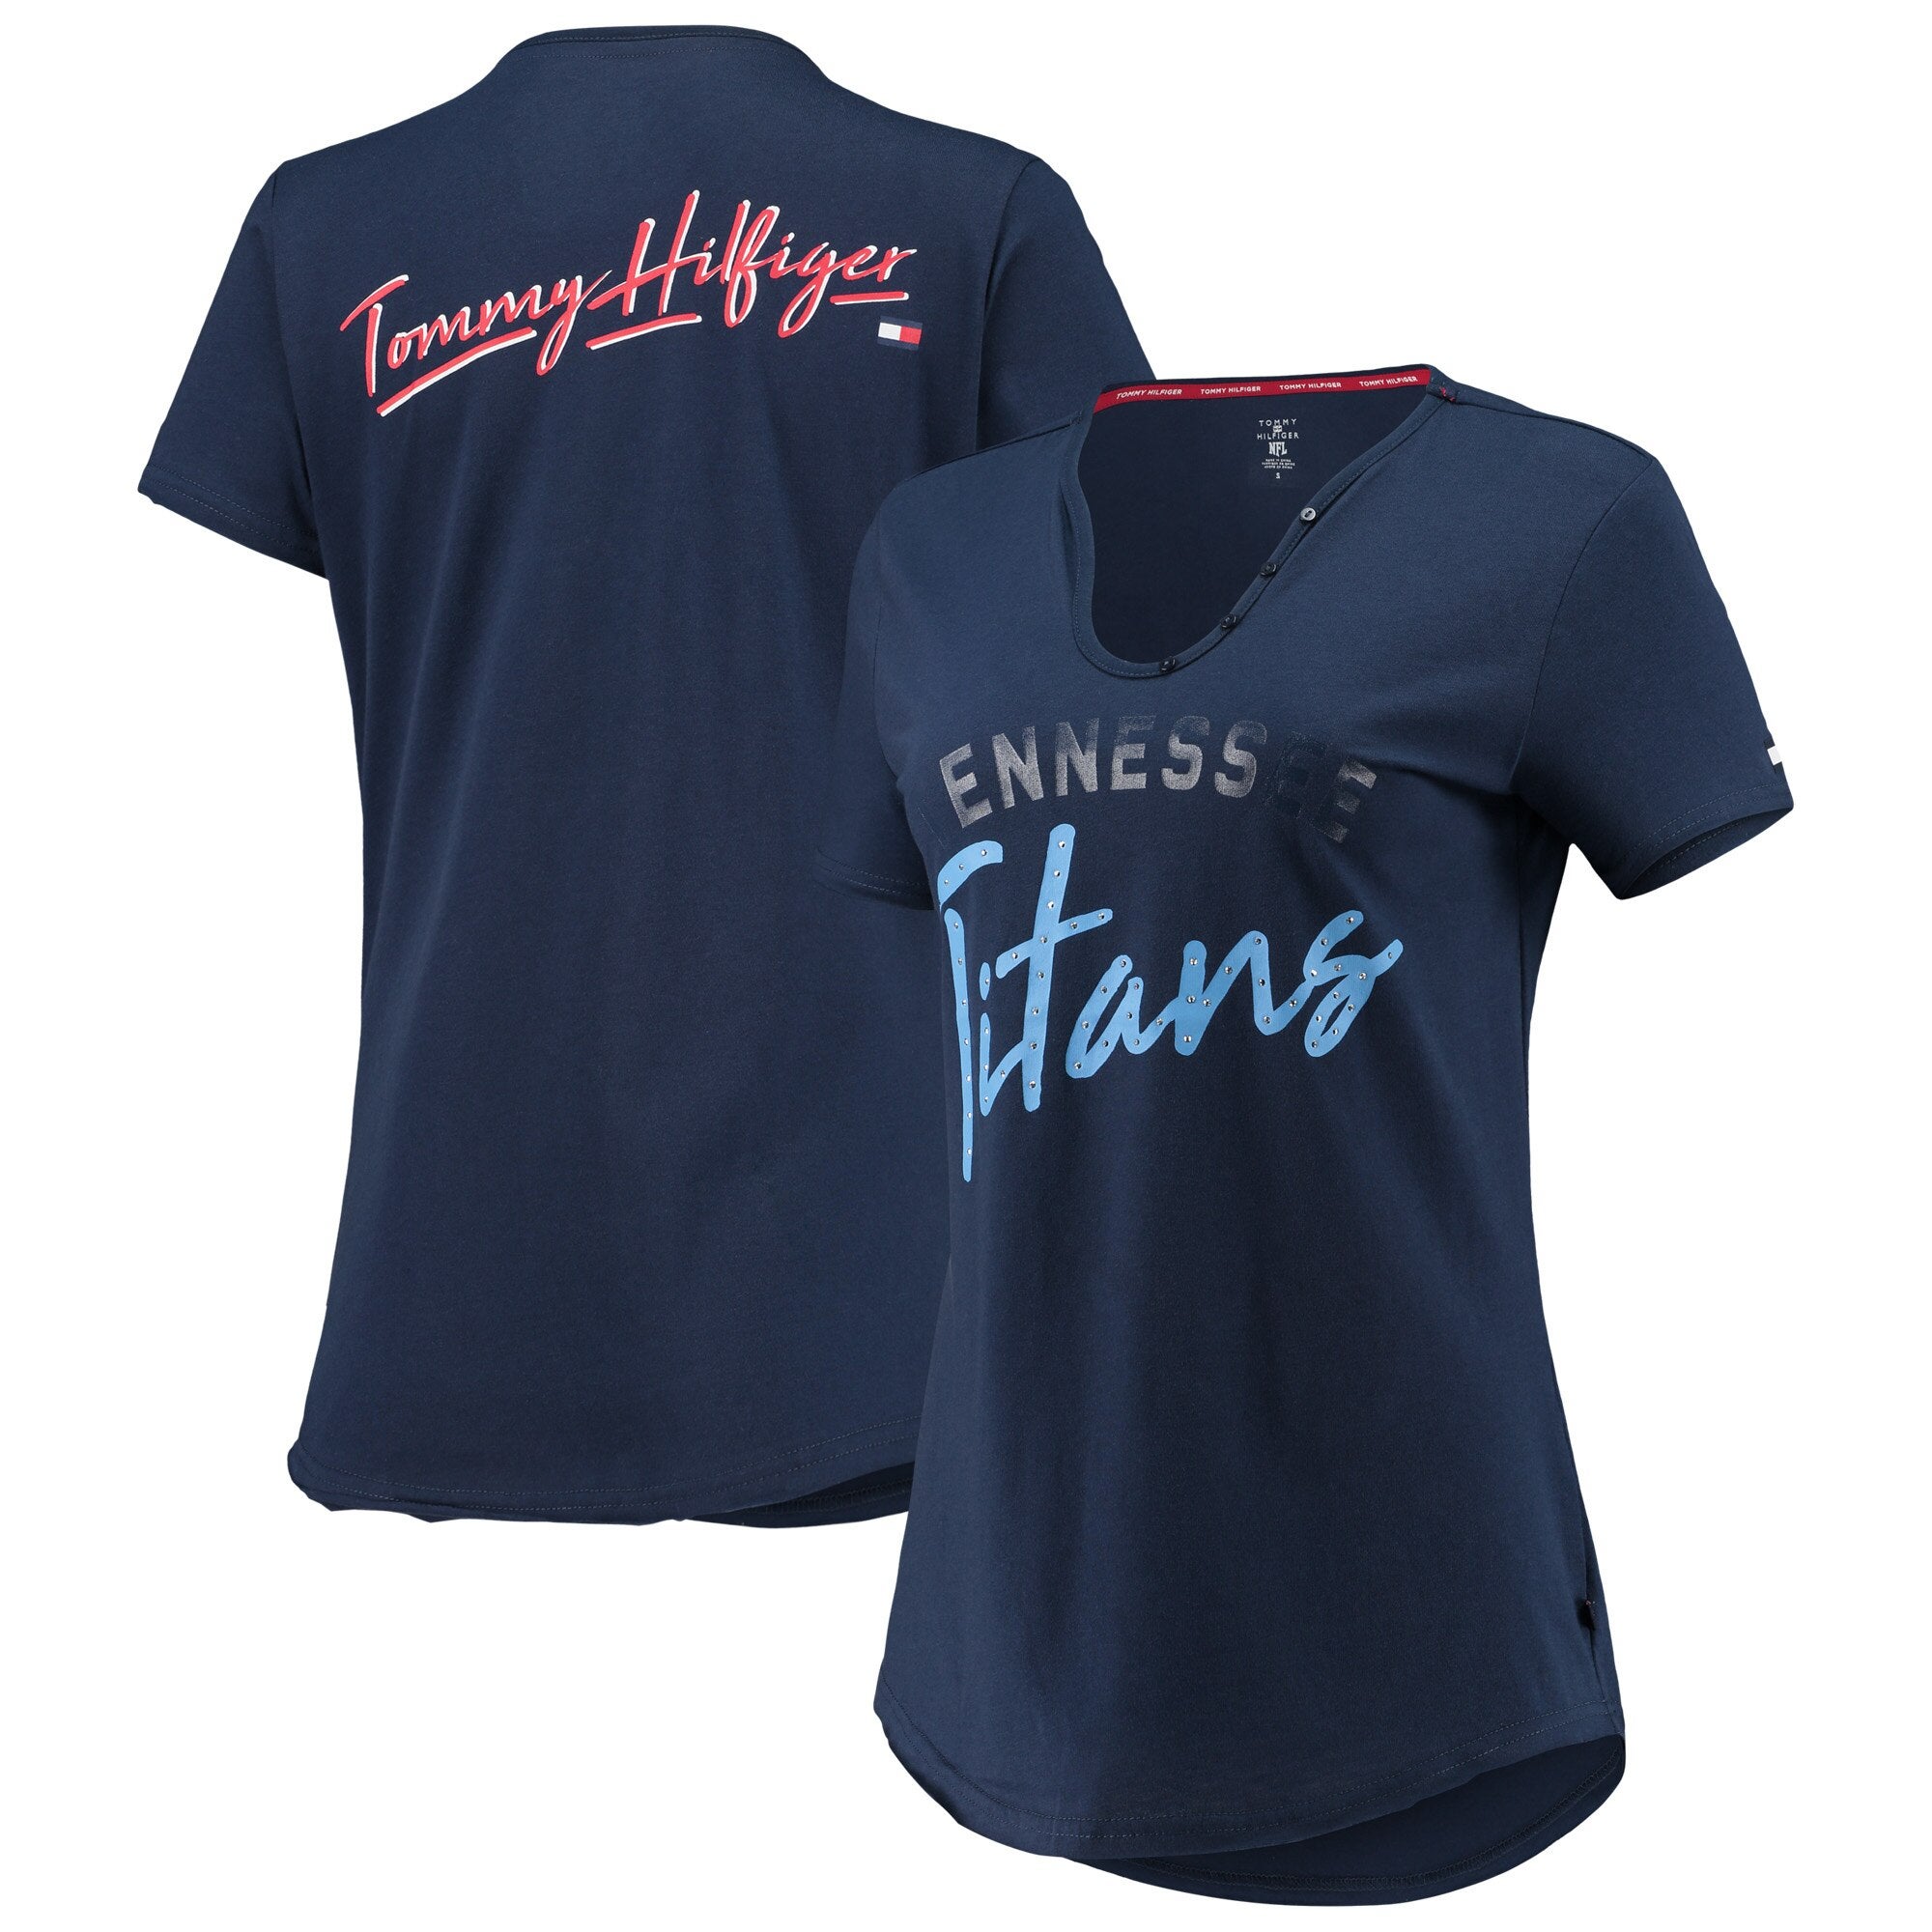 Hilfiger Titans Riley V-Neck T-Shirt | Champs Sports